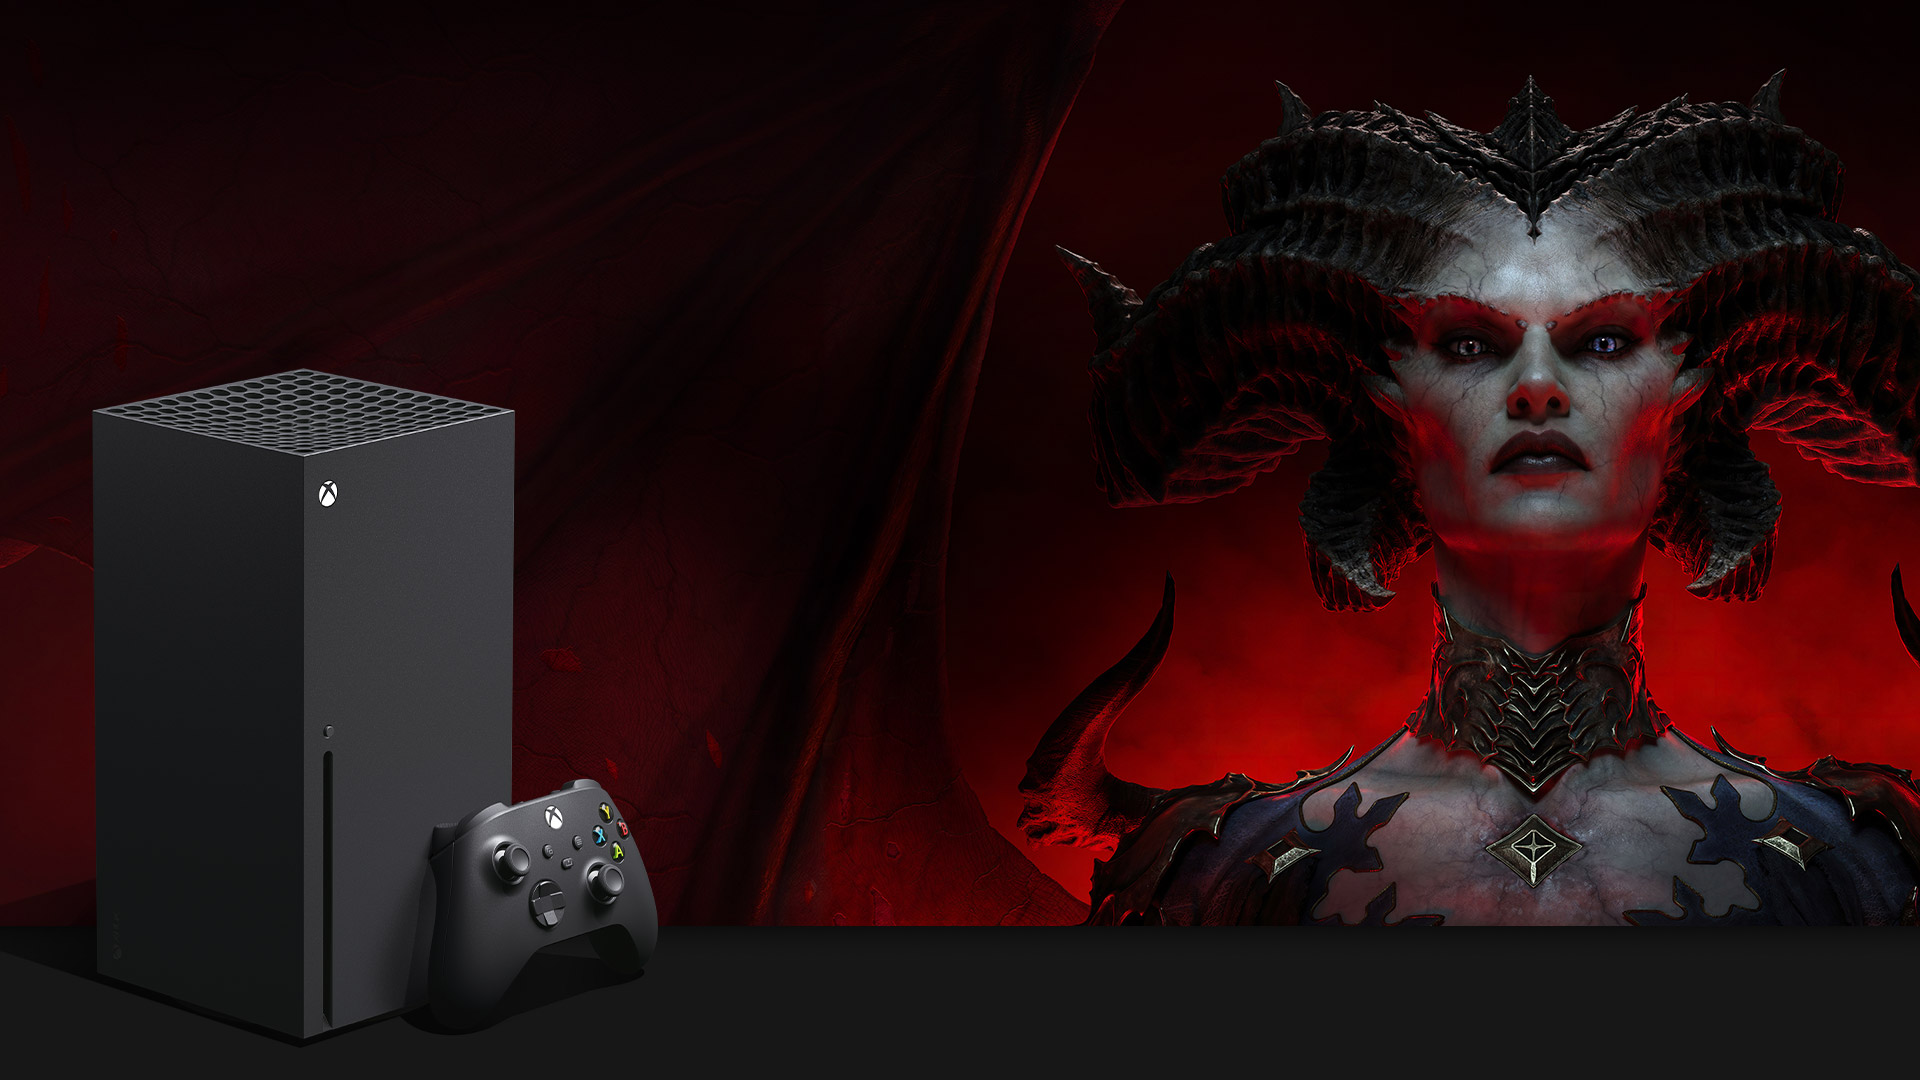 Visual do Xbox Series X, na cor preta, ao lado de personagem diabólico do jogo Diablo IV